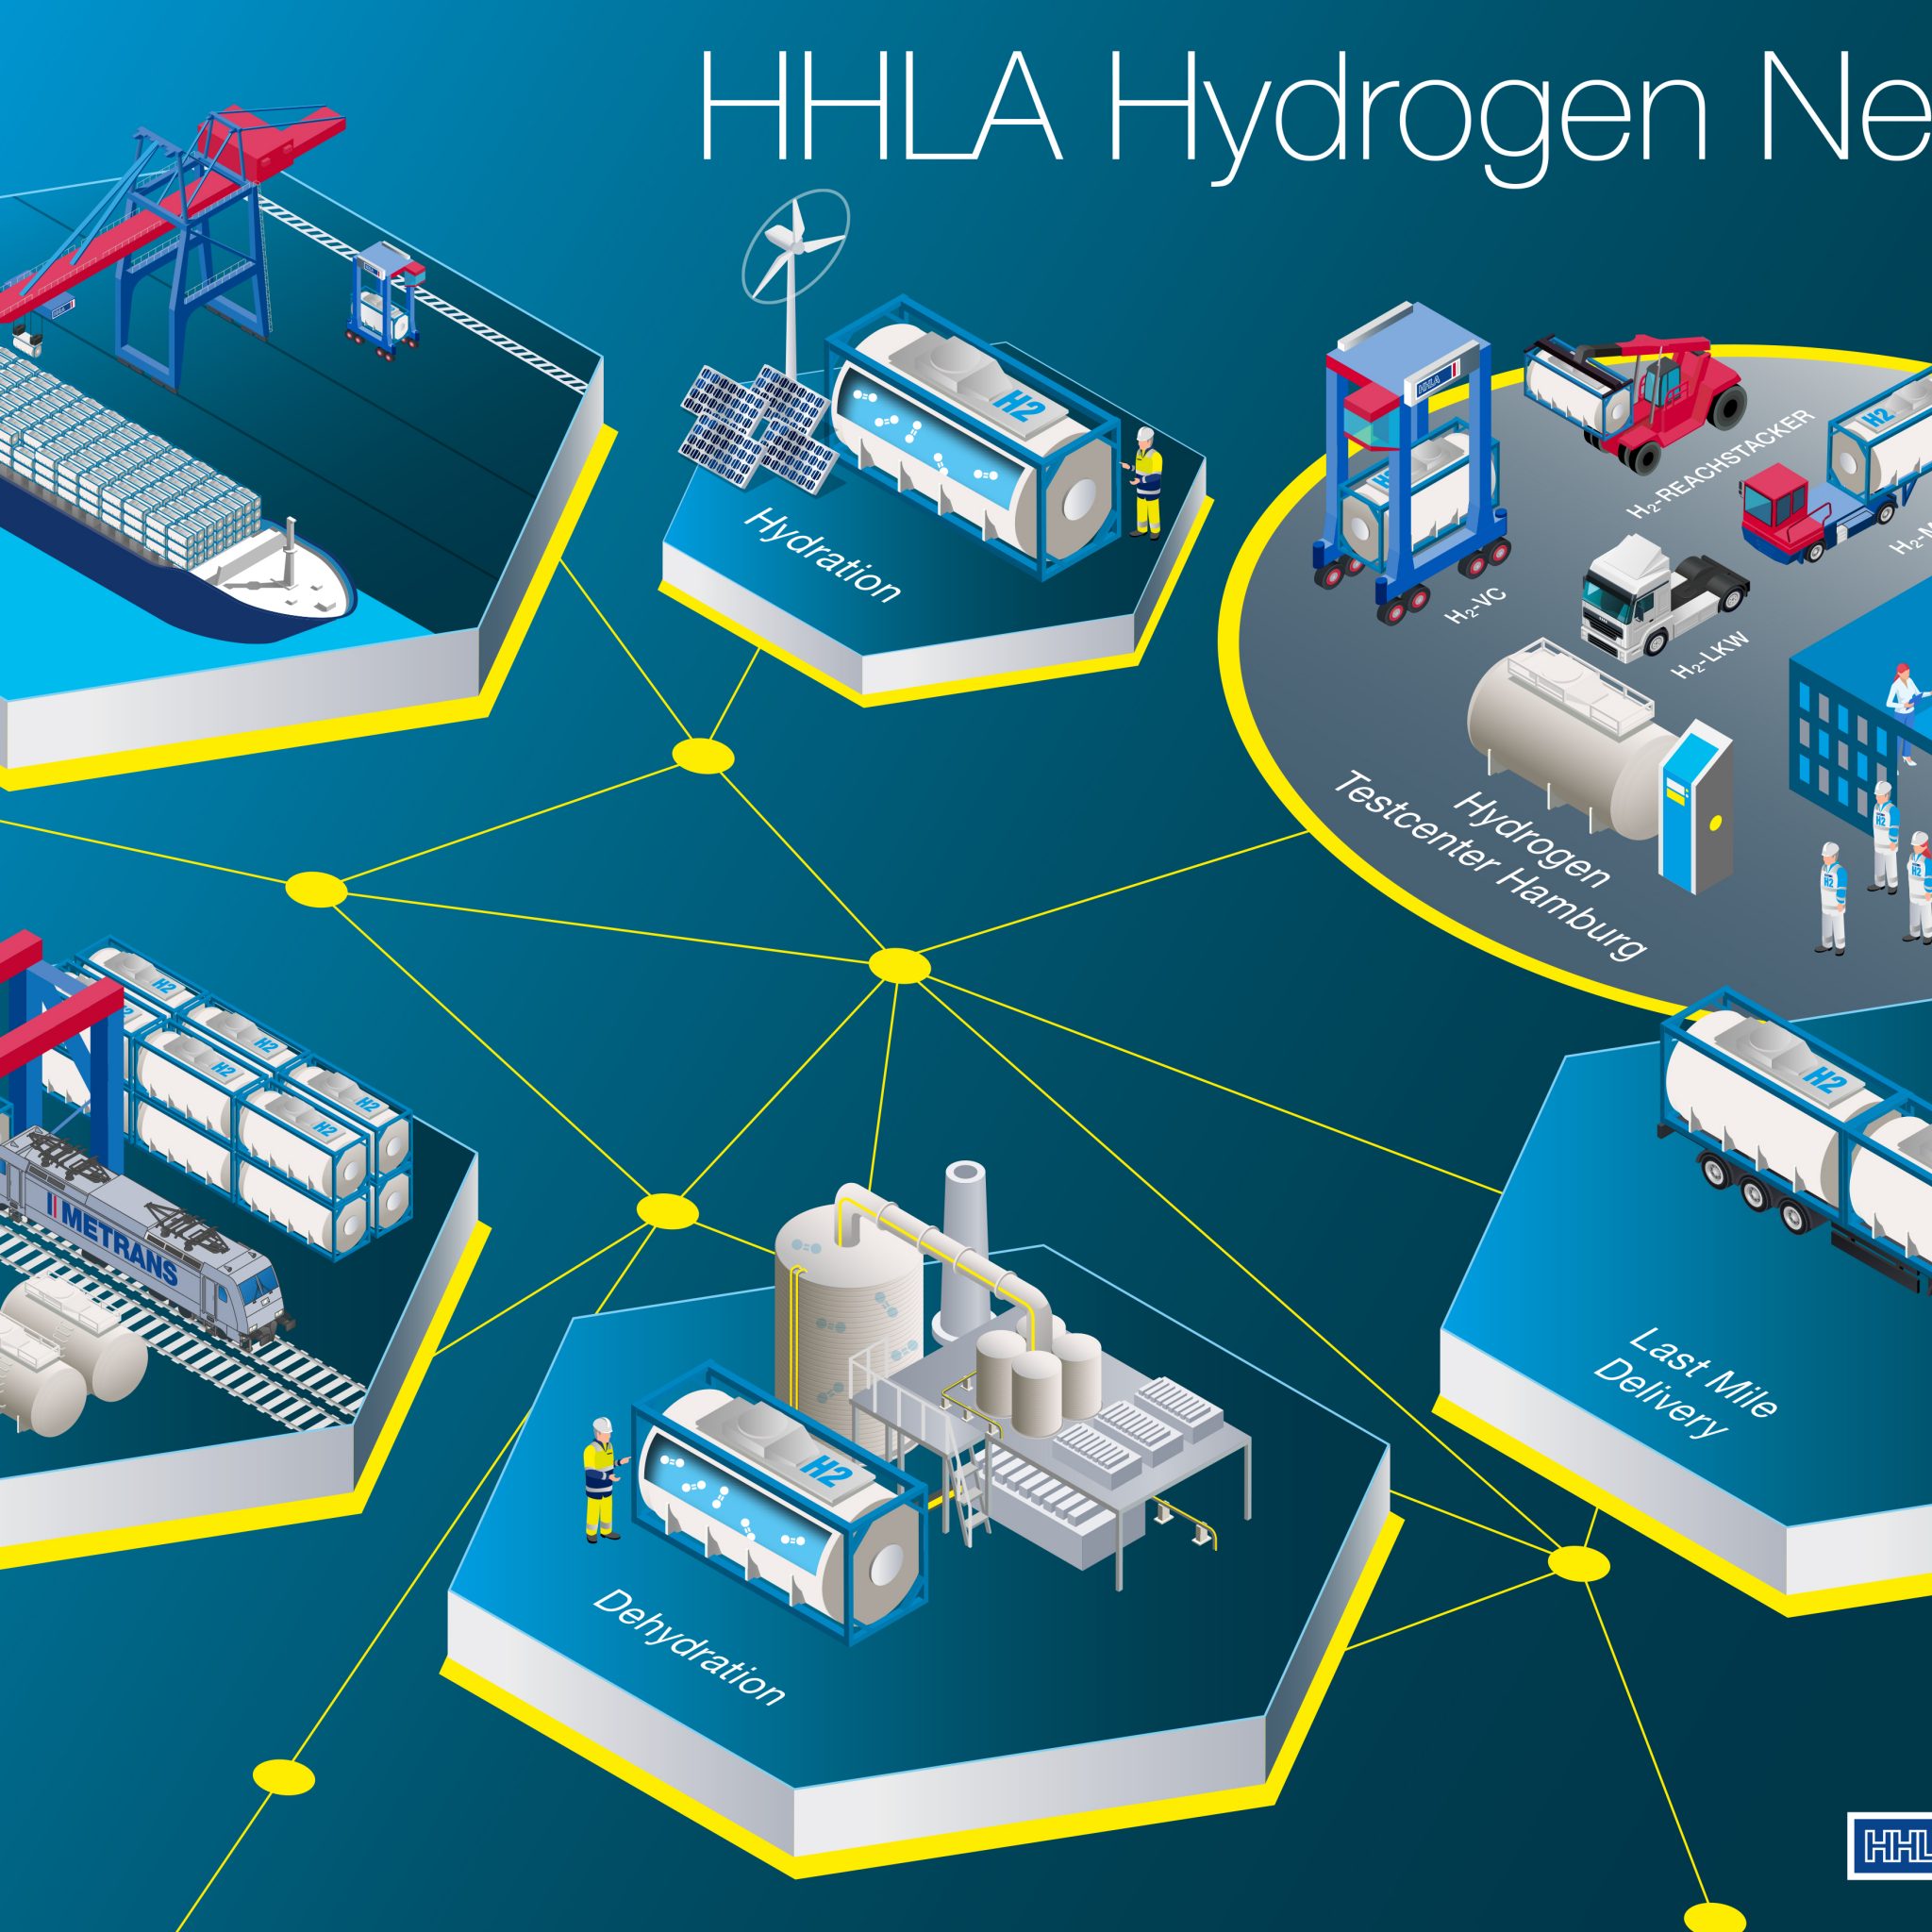 Het netwerk van waterstof-oplossingen in de haven van Hamburg. (Infographic HHLA)